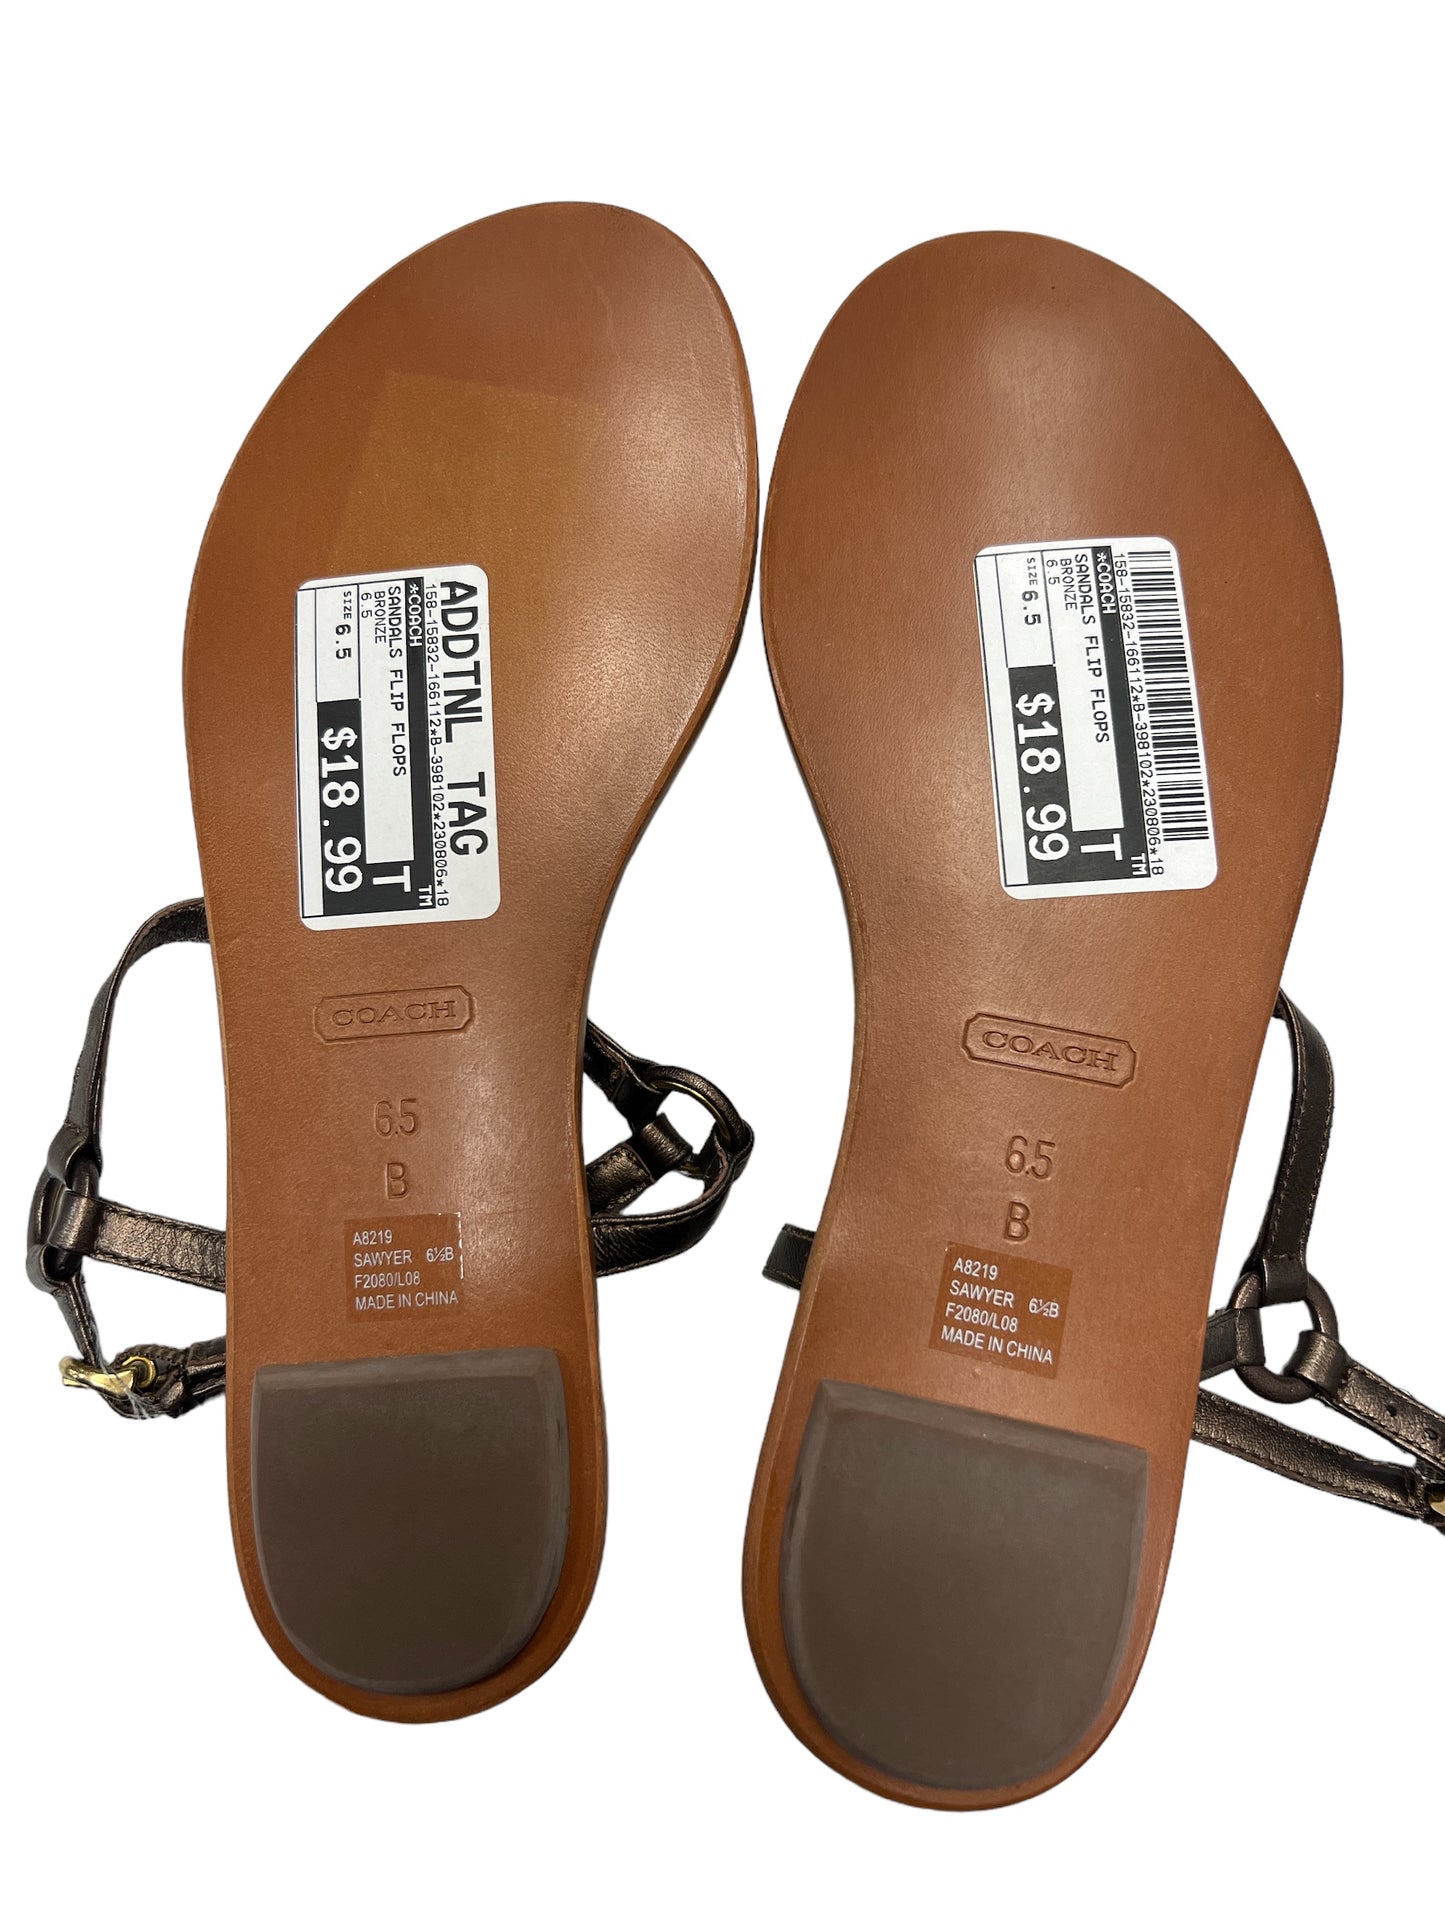 Sandals Flip Flops By Coach  Size: 6.5